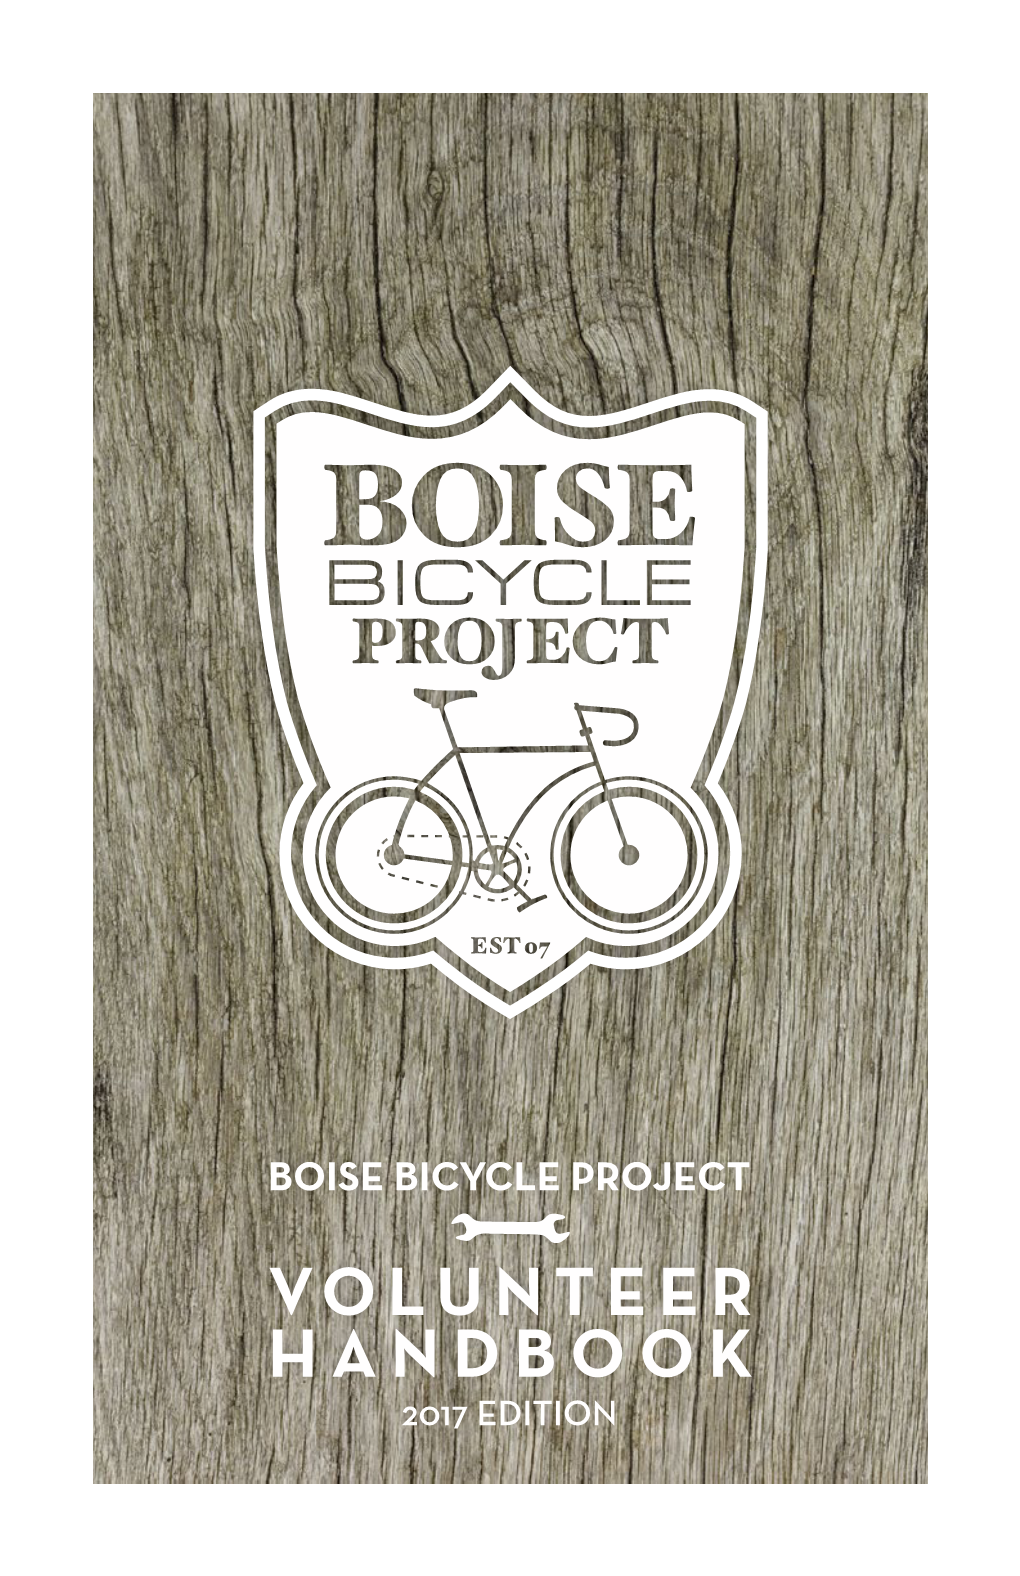 Volunteer Handbook Boise Bicycle Project